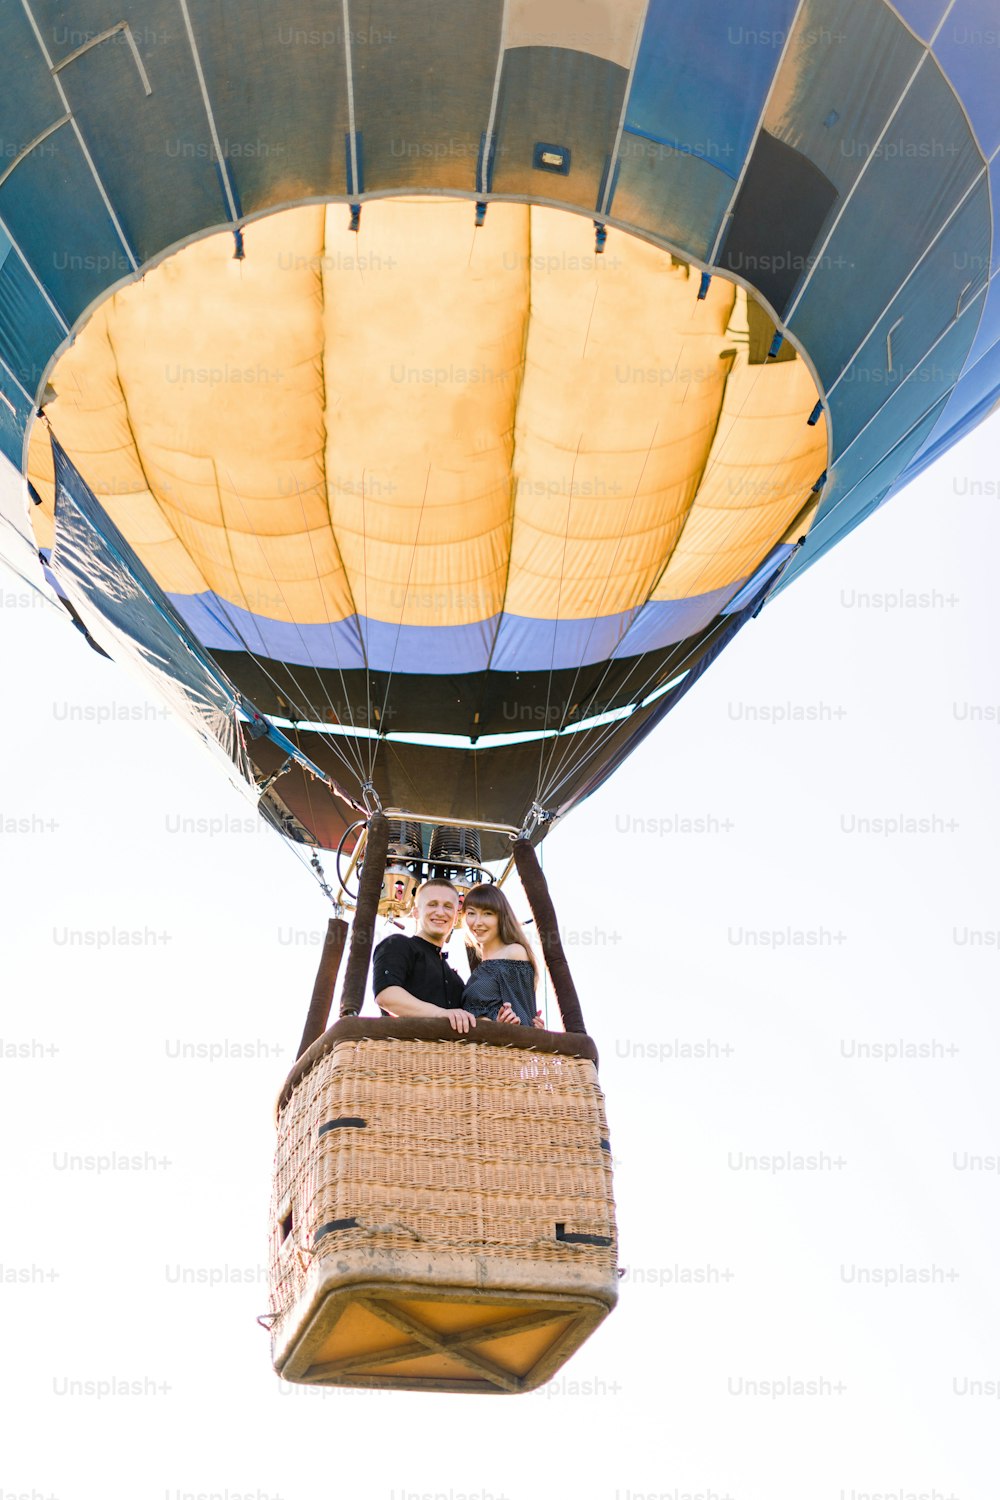 Schönes romantisches Paar umarmt sich im Korb des Heißluftballons und fliegt im Sommer sonnigen Abend. Romantisches Abenteuer, Liebe im Flugkonzept. Blick vom Land.